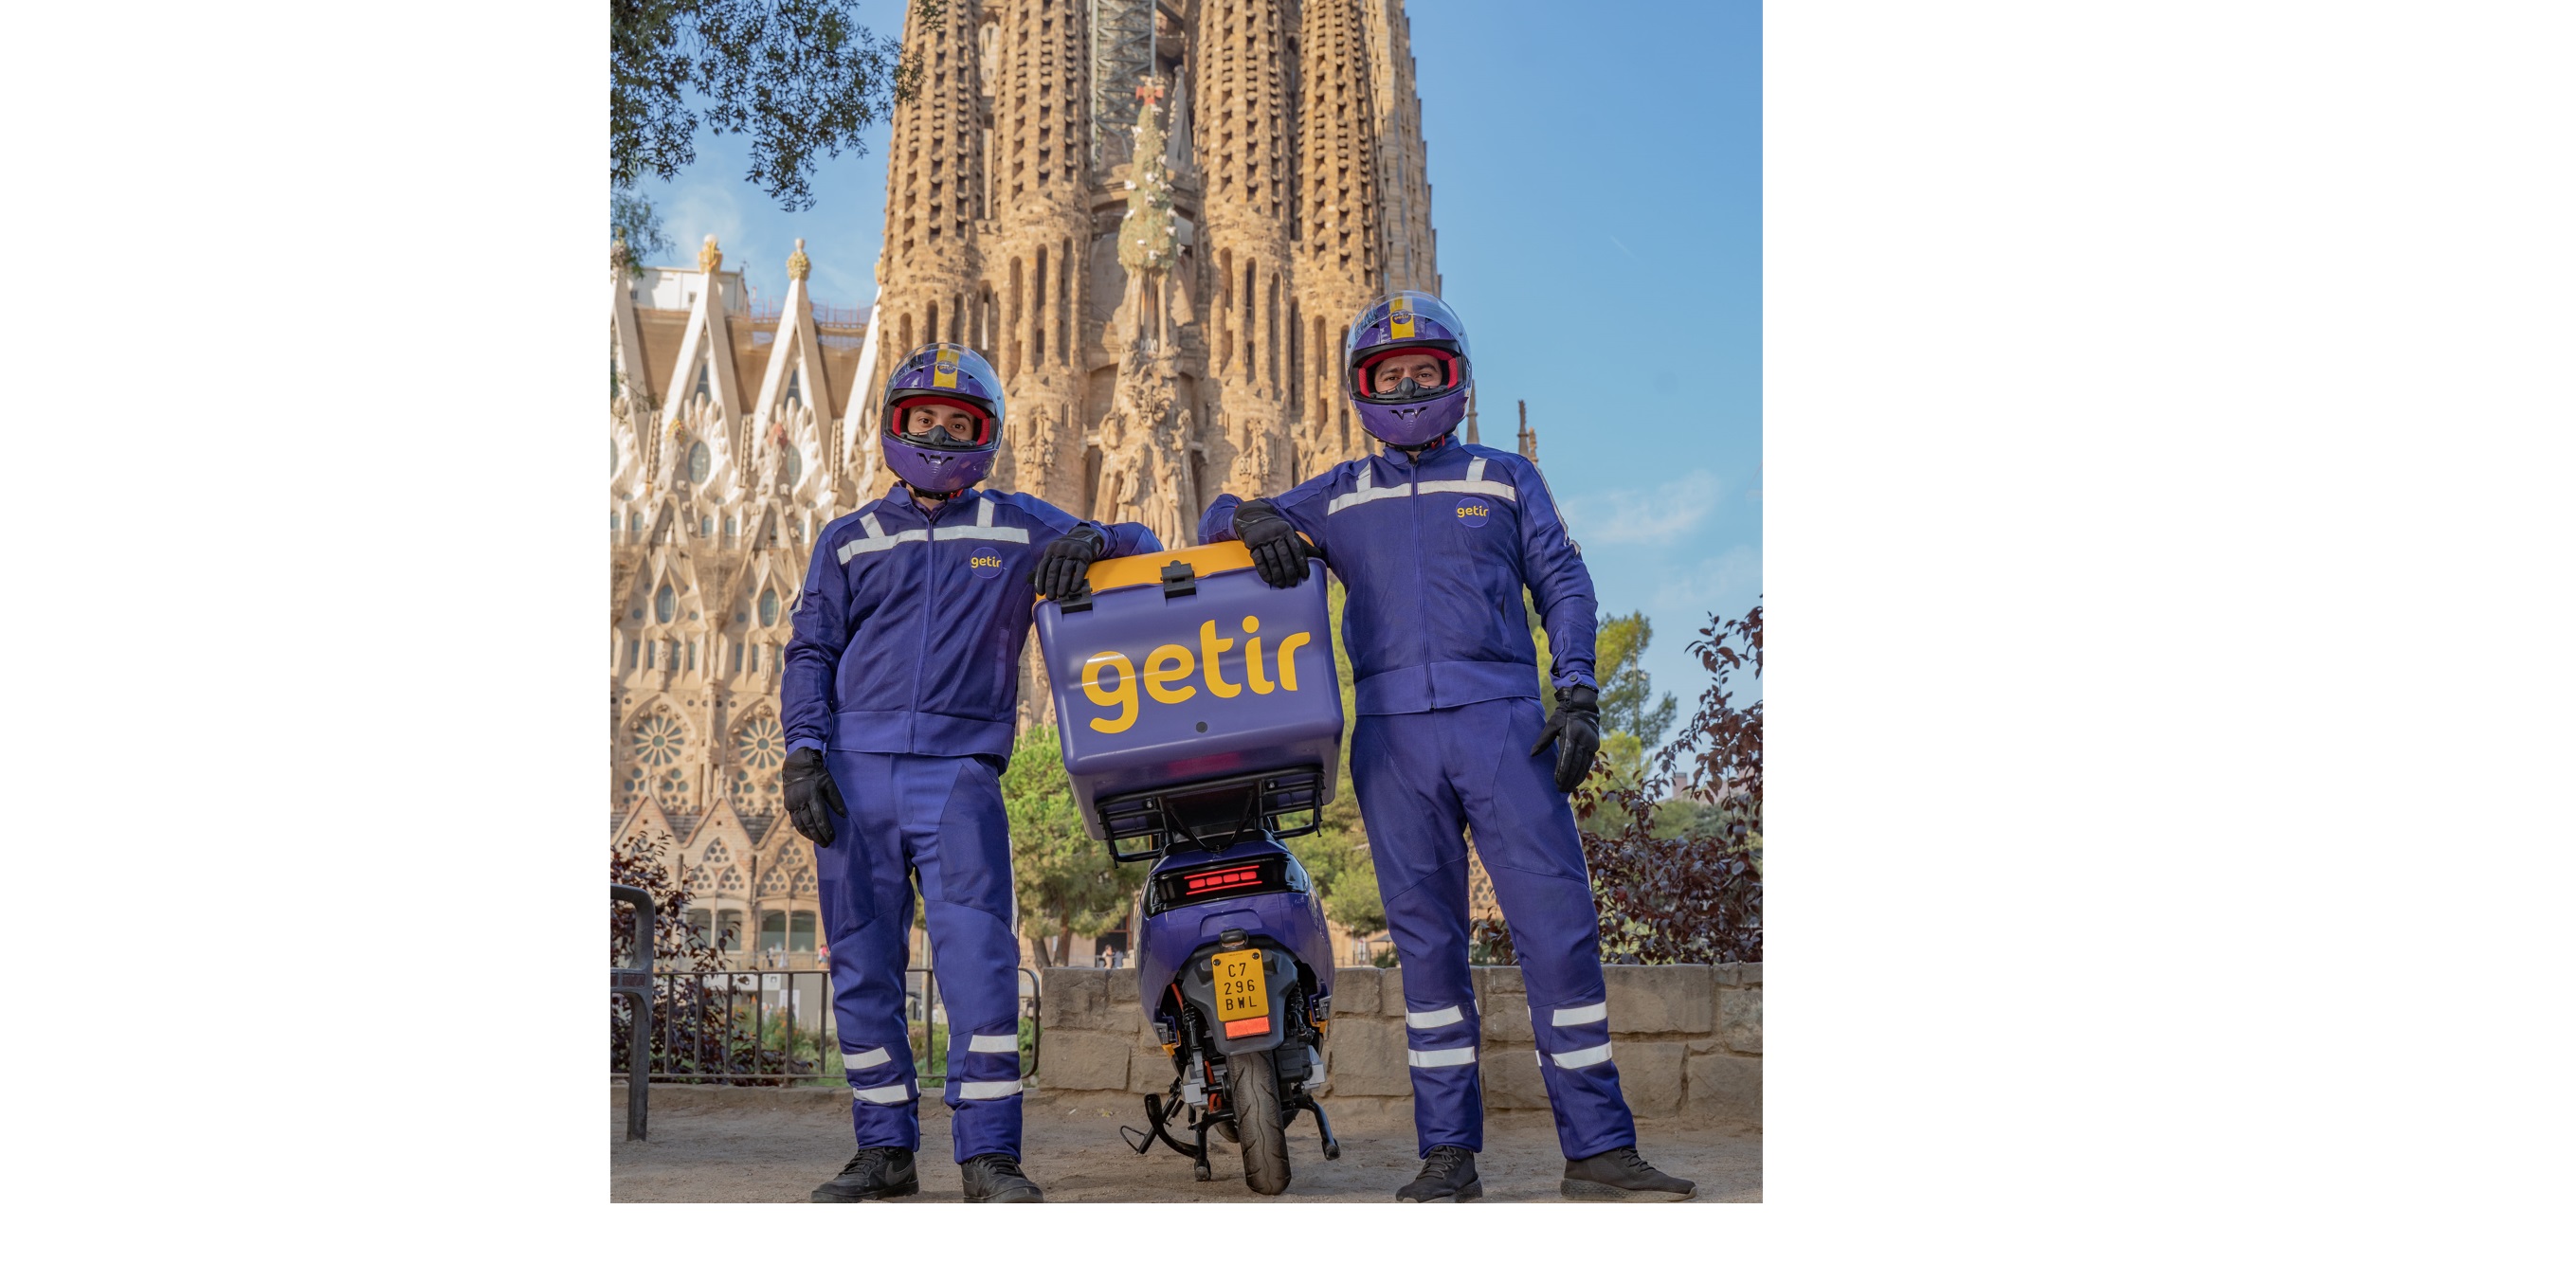 Getir, entrega ultrarrápida , campaña publicitaria , transporte urbano , Madrid ,Barcelona, programapublicidad